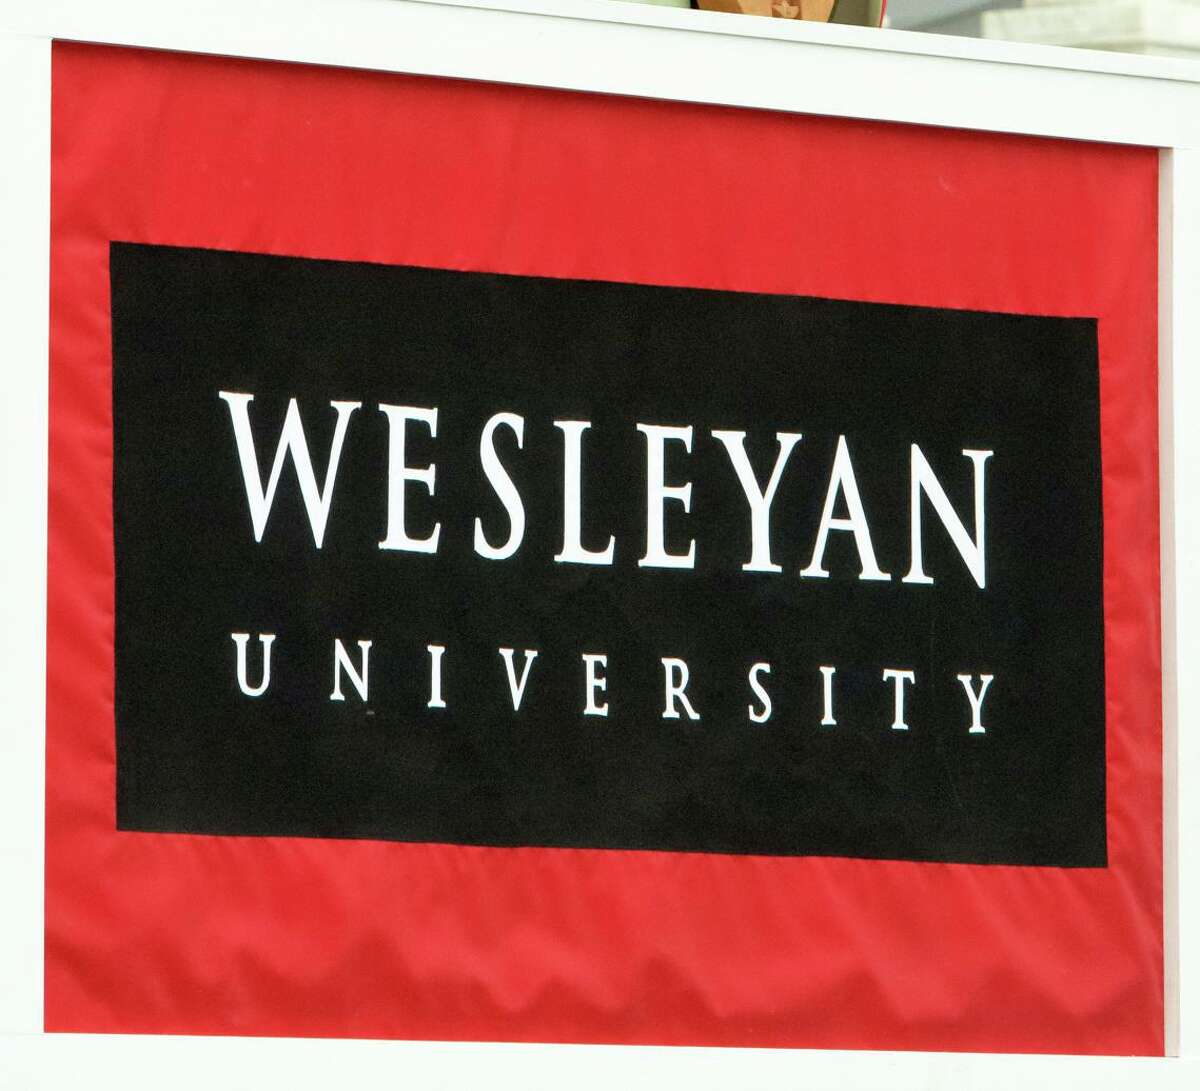 Wesleyan University is in Middletown.